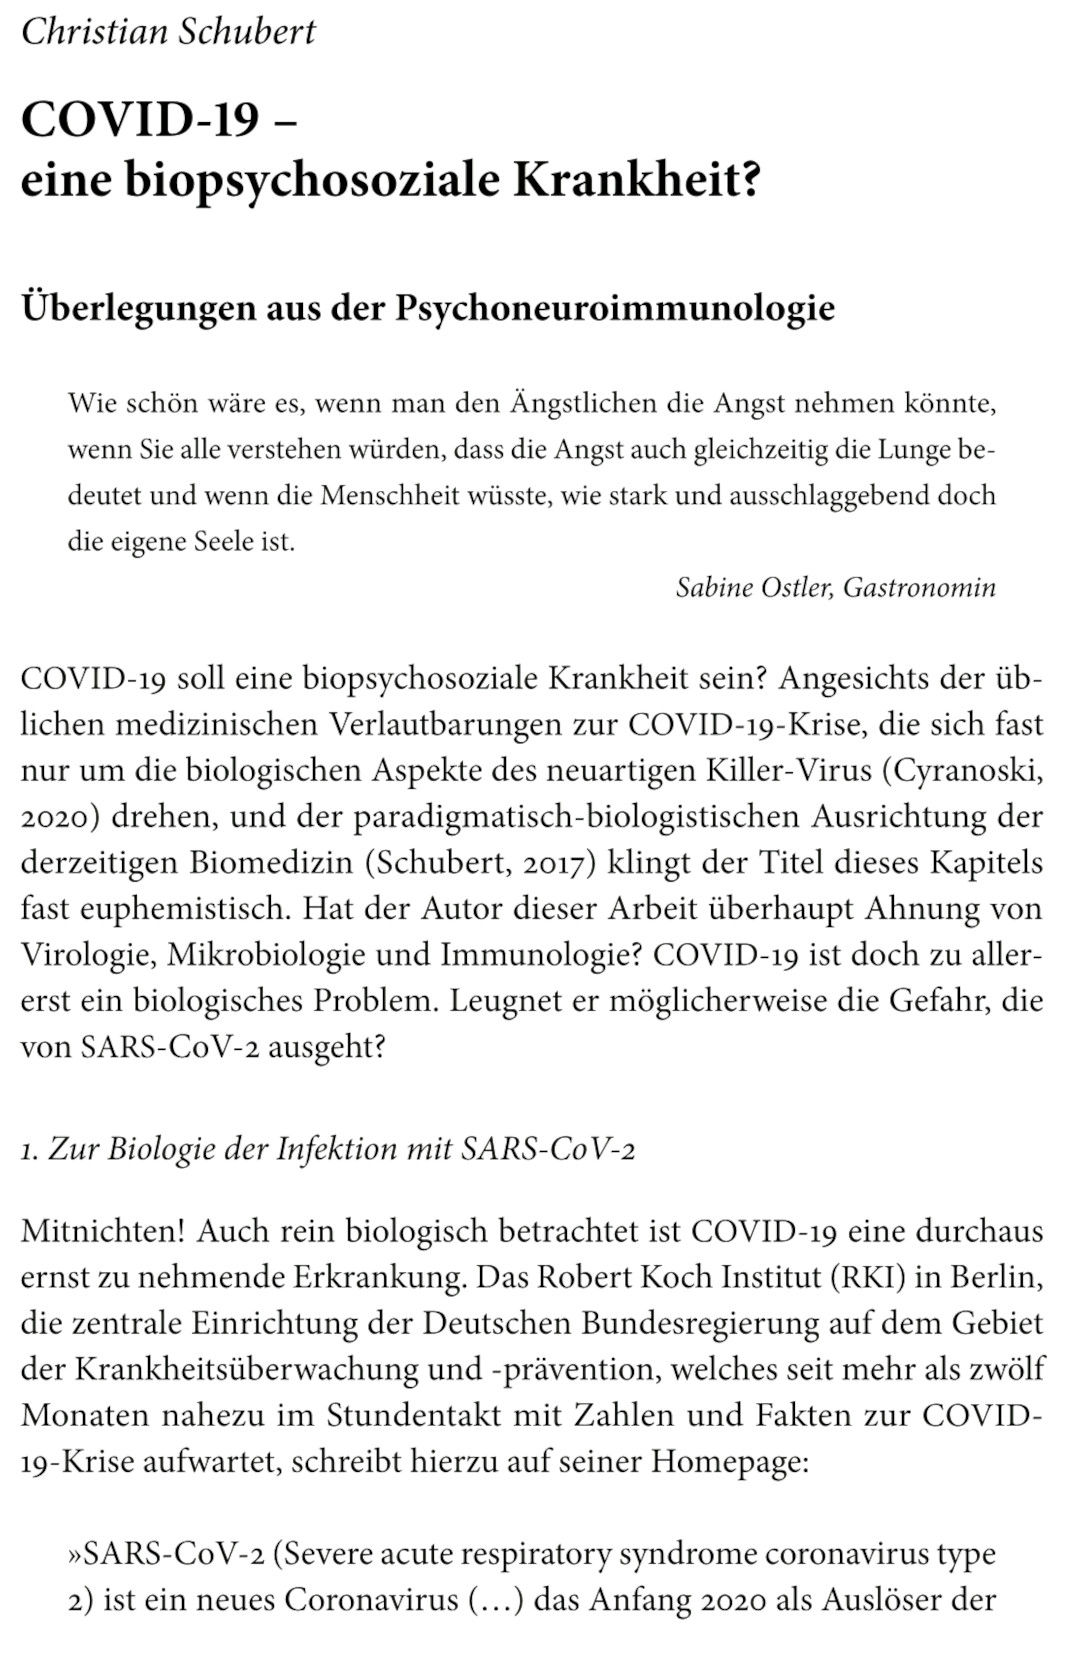 COVID-19- eine biopsychosoziale Krankheit? – von Christian Schubert